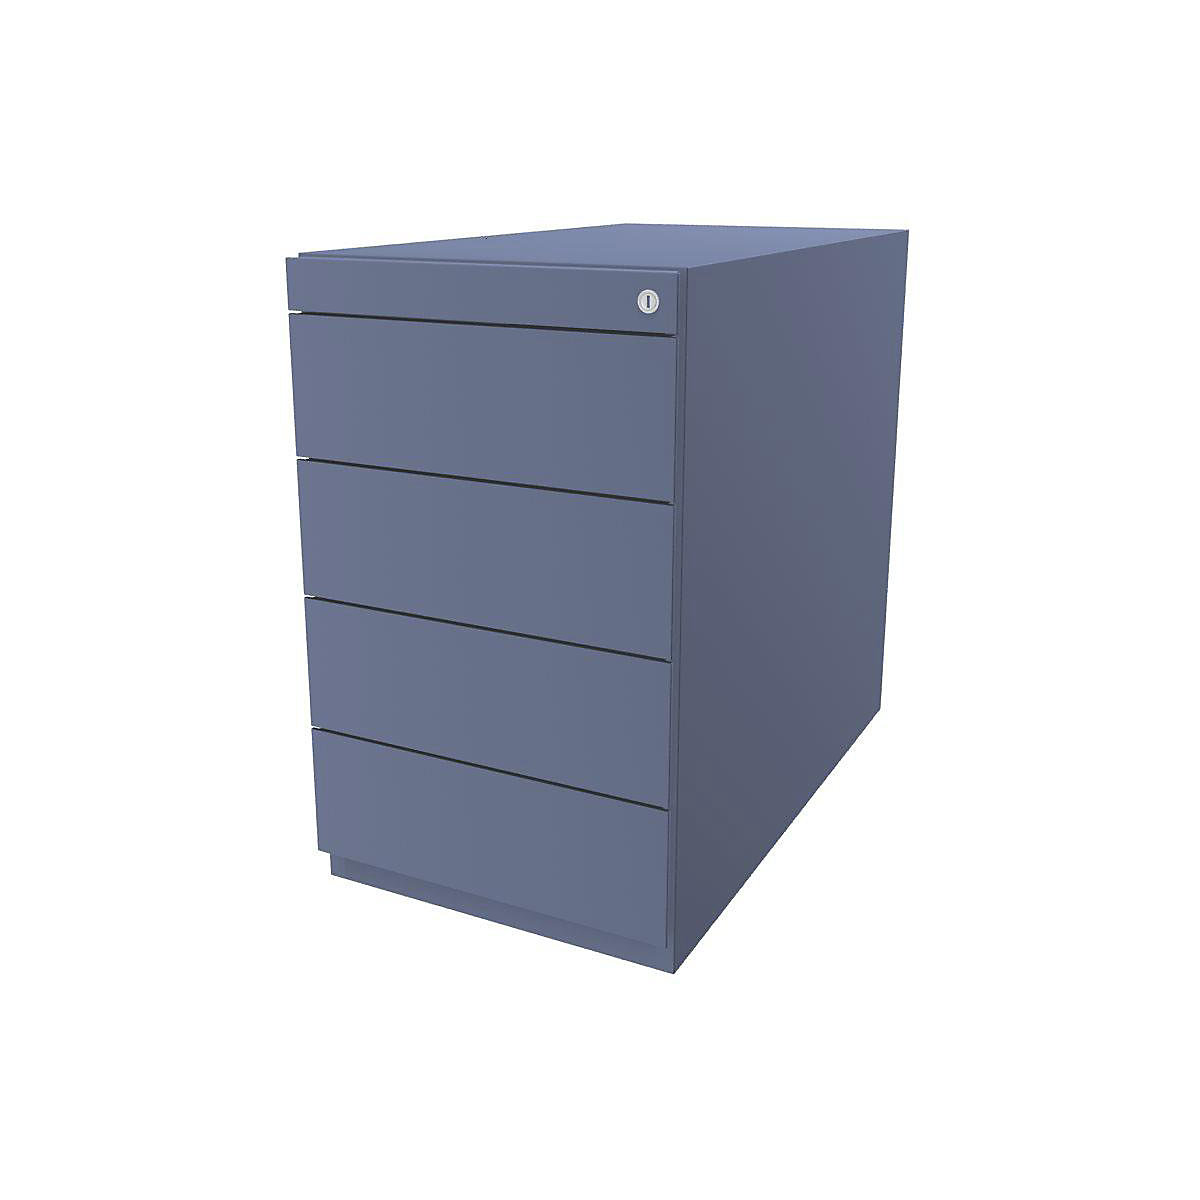 BISLEY Standcontainer Note™, mit 4 Universalschubladen, Tiefe 775 mm, blau